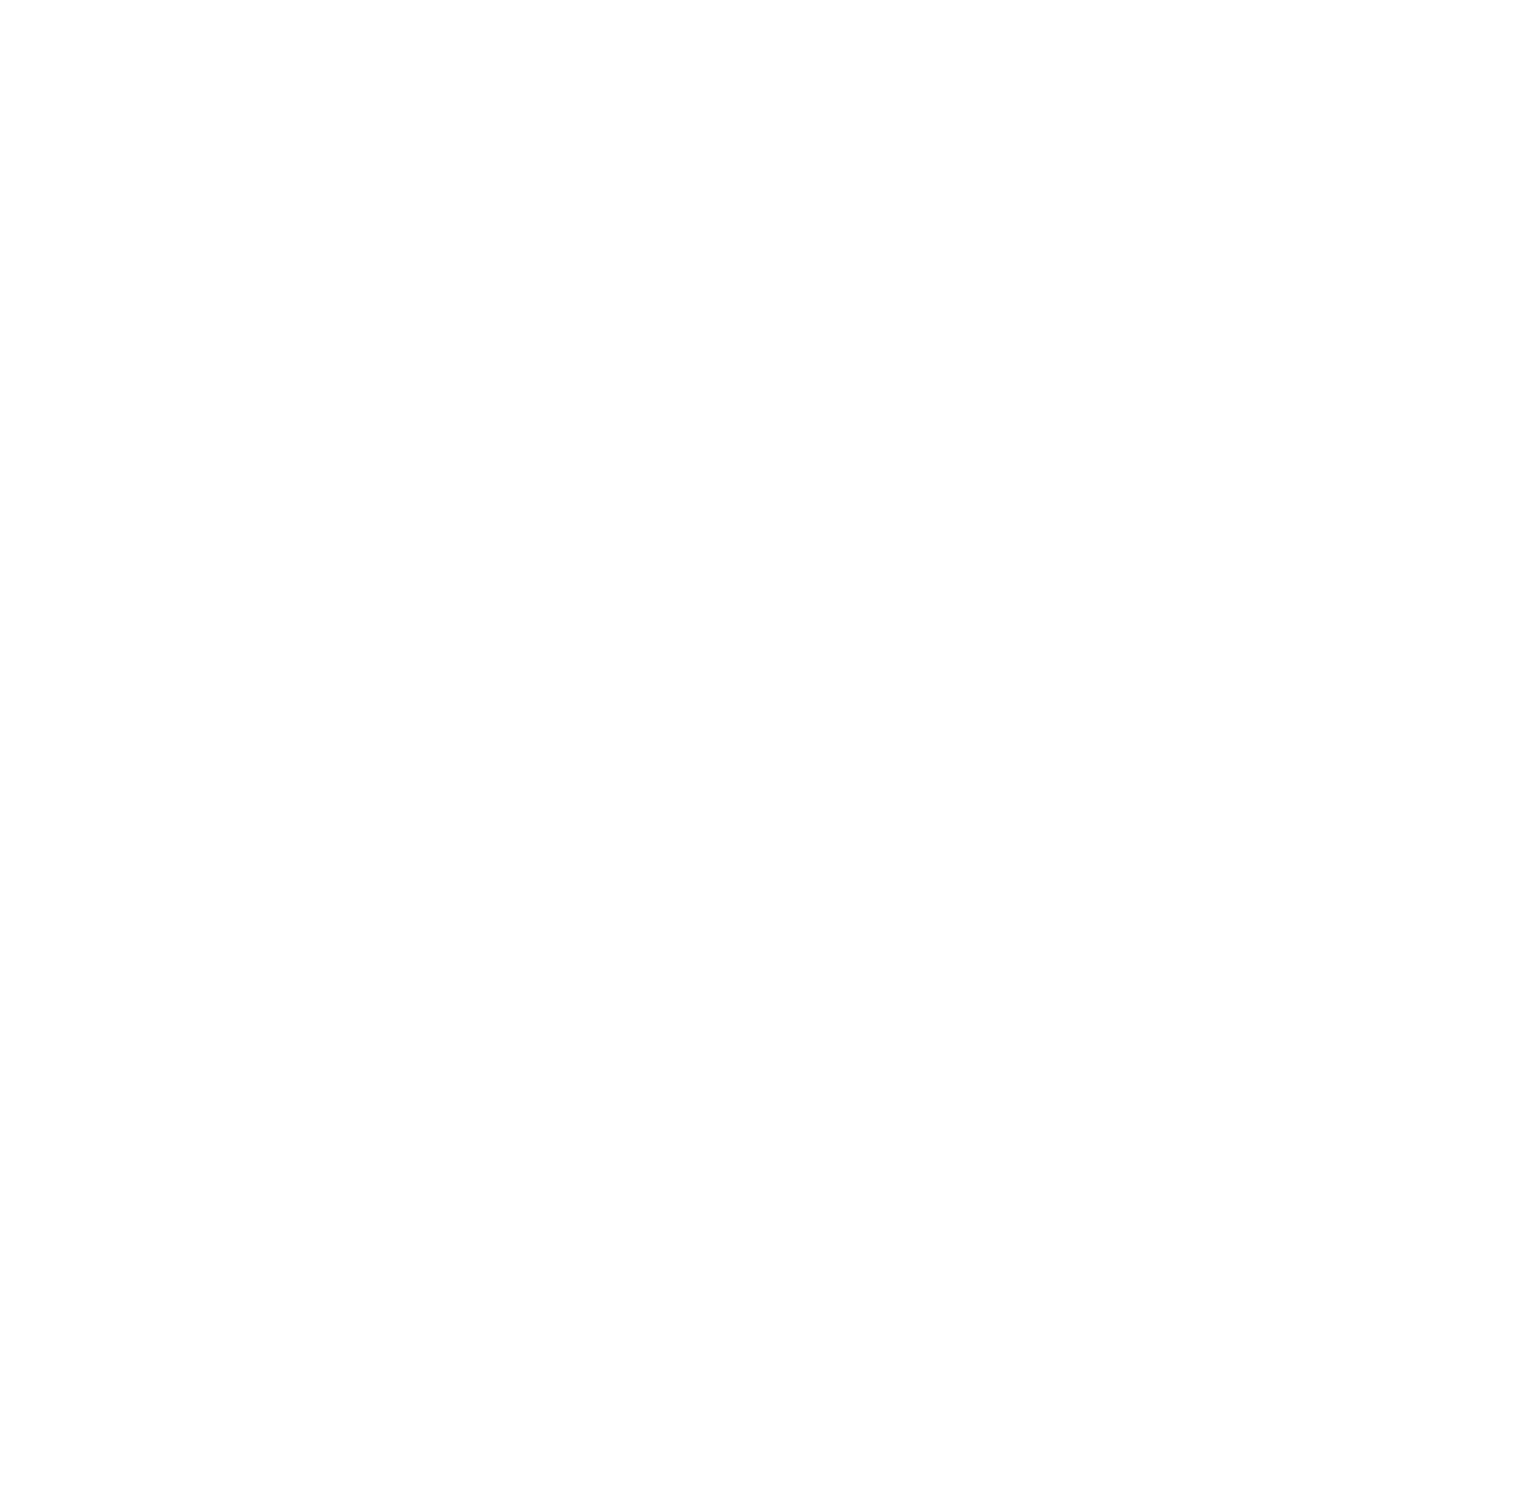 Arhaus logo pour fonds sombres (PNG transparent)